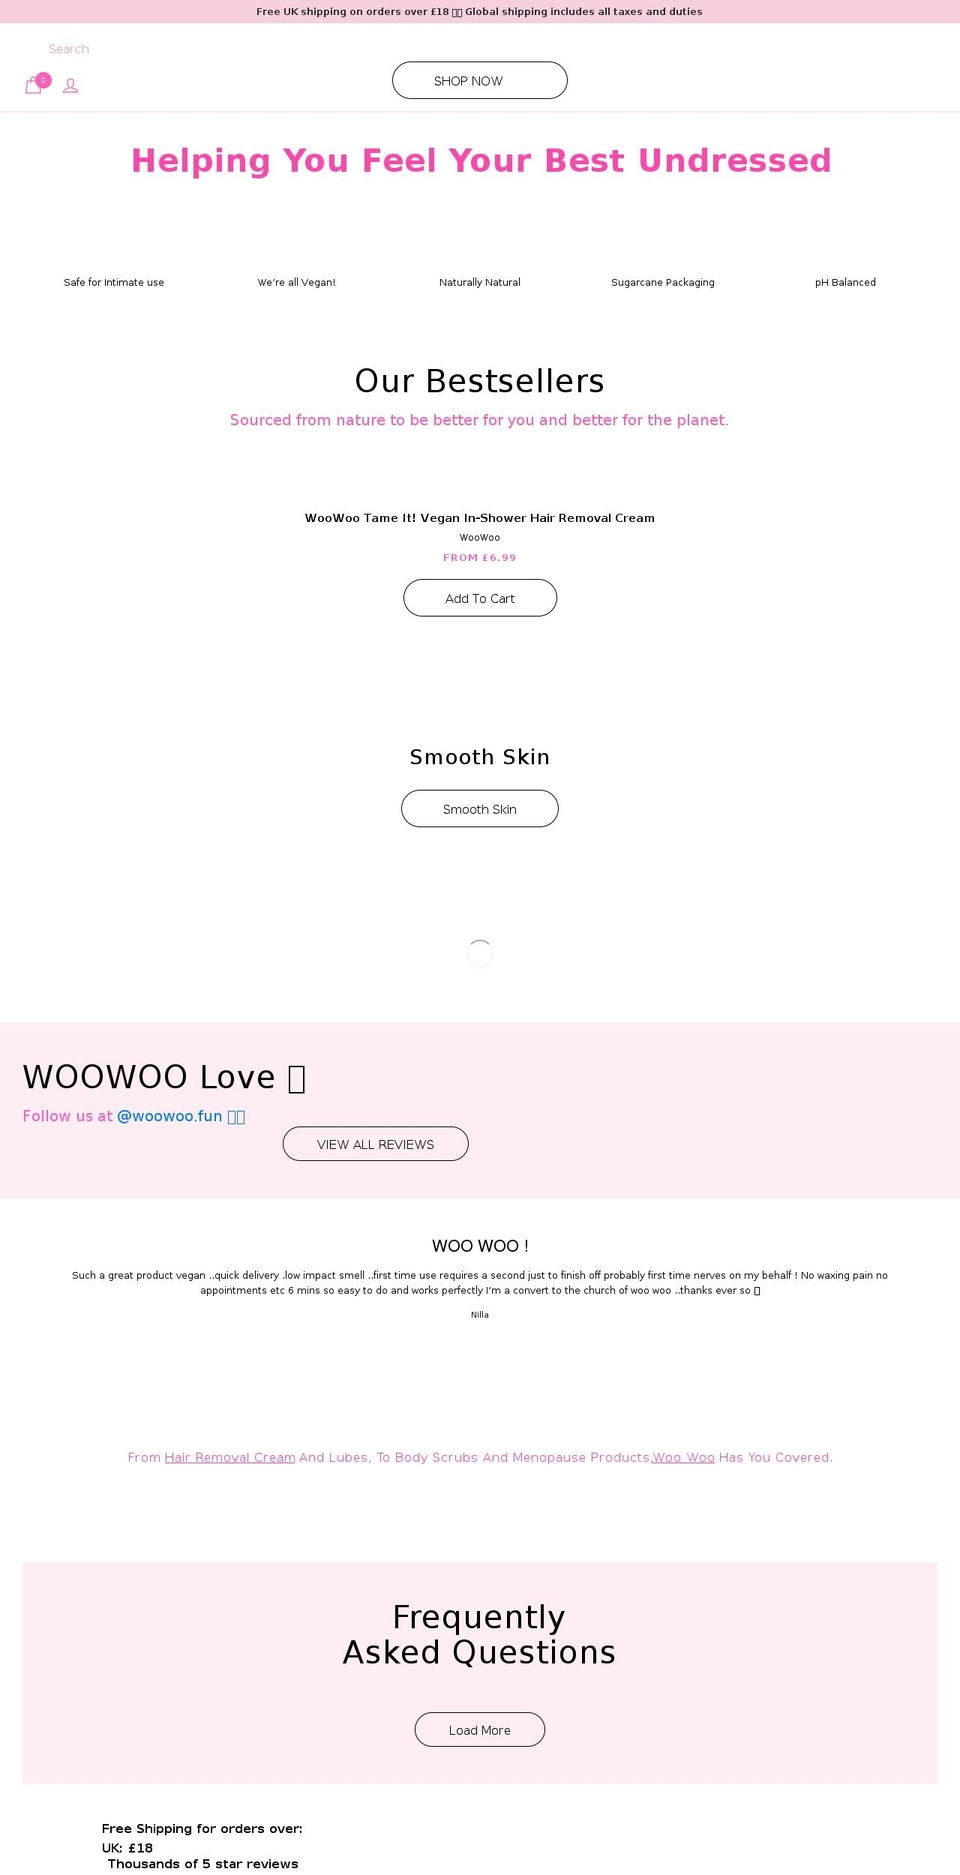 woowoo.fun shopify website screenshot